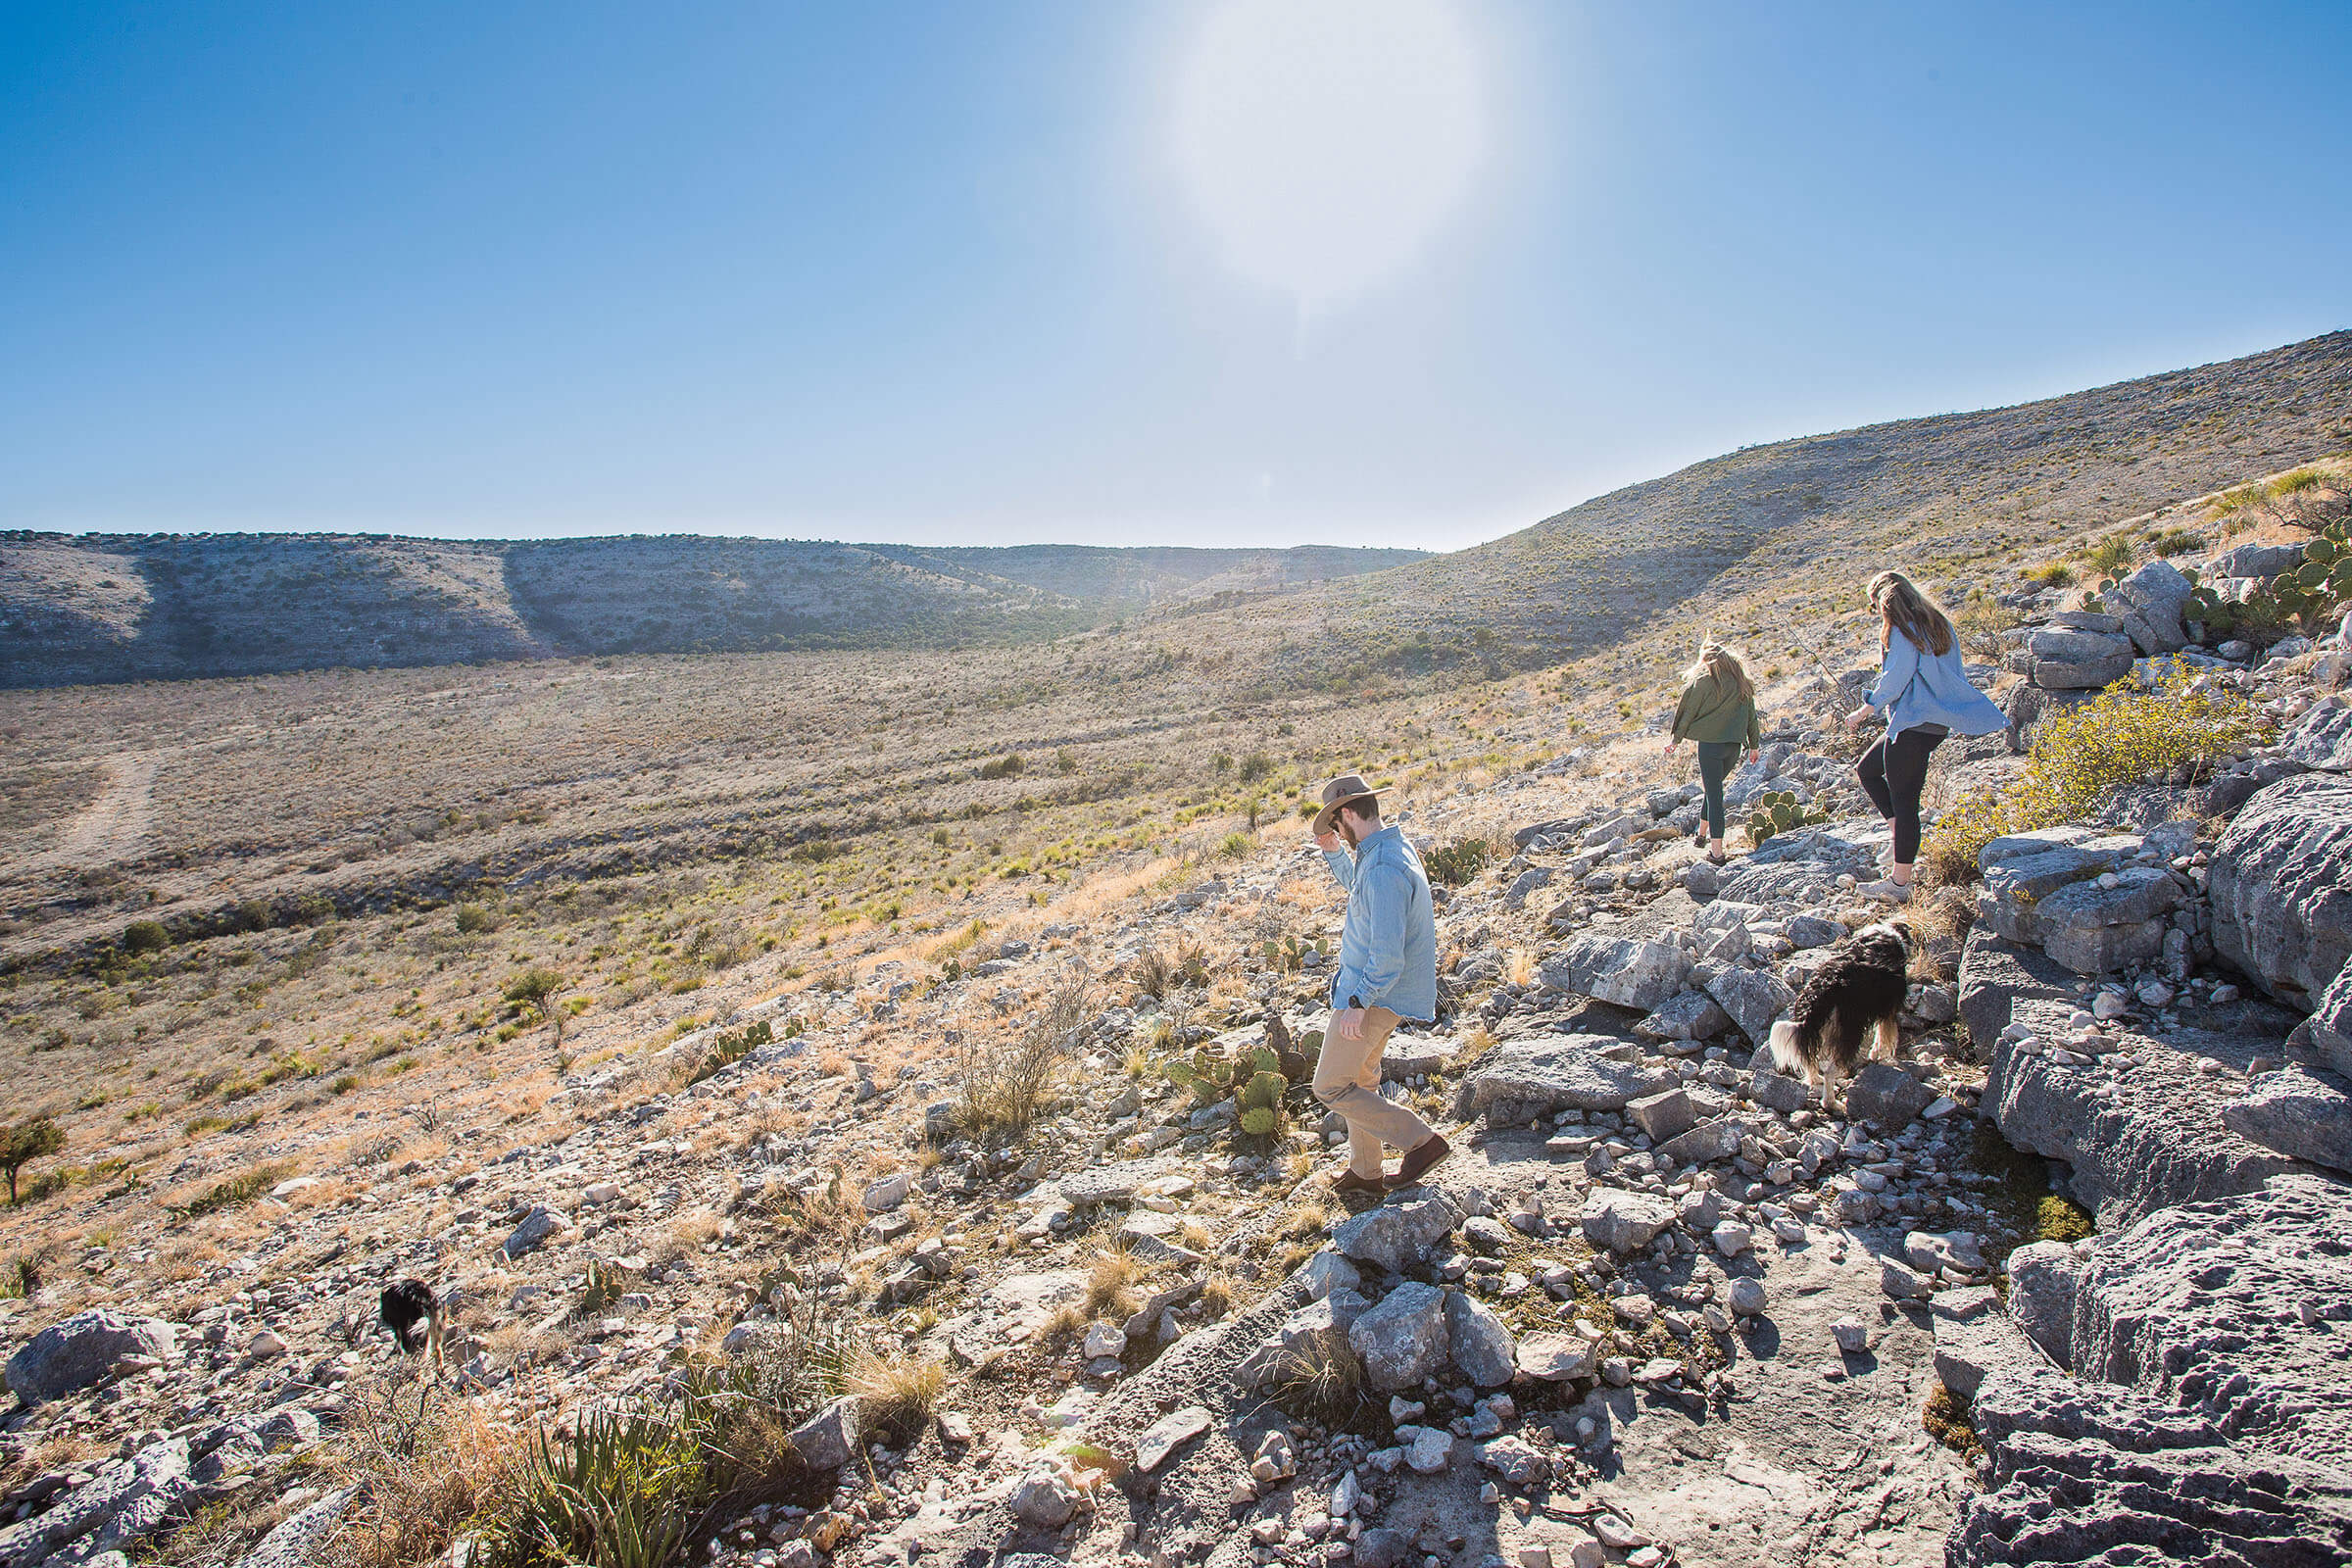 A group of people walk through a rocky desert terrain